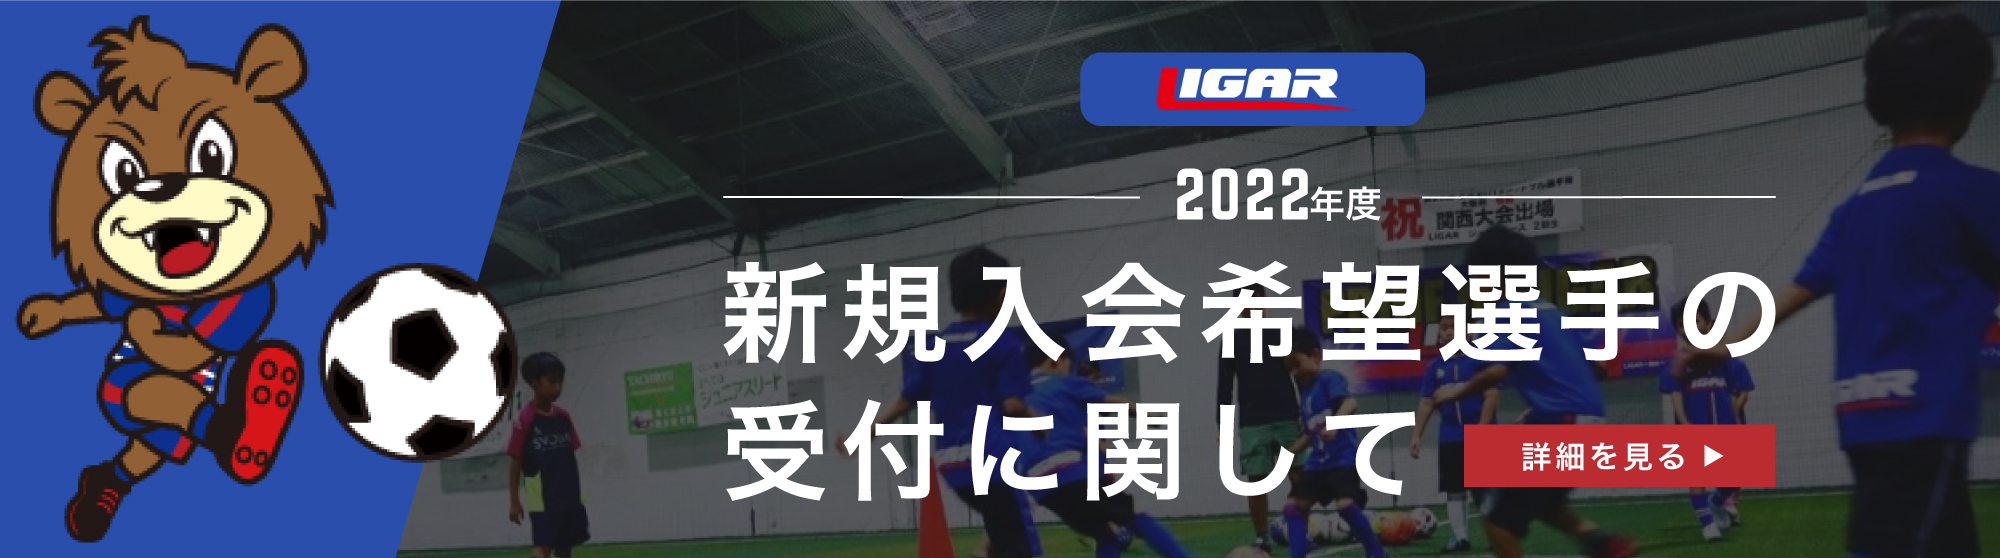 2022年度 LIGAR JPC 新規入会希望選手の受付に関して